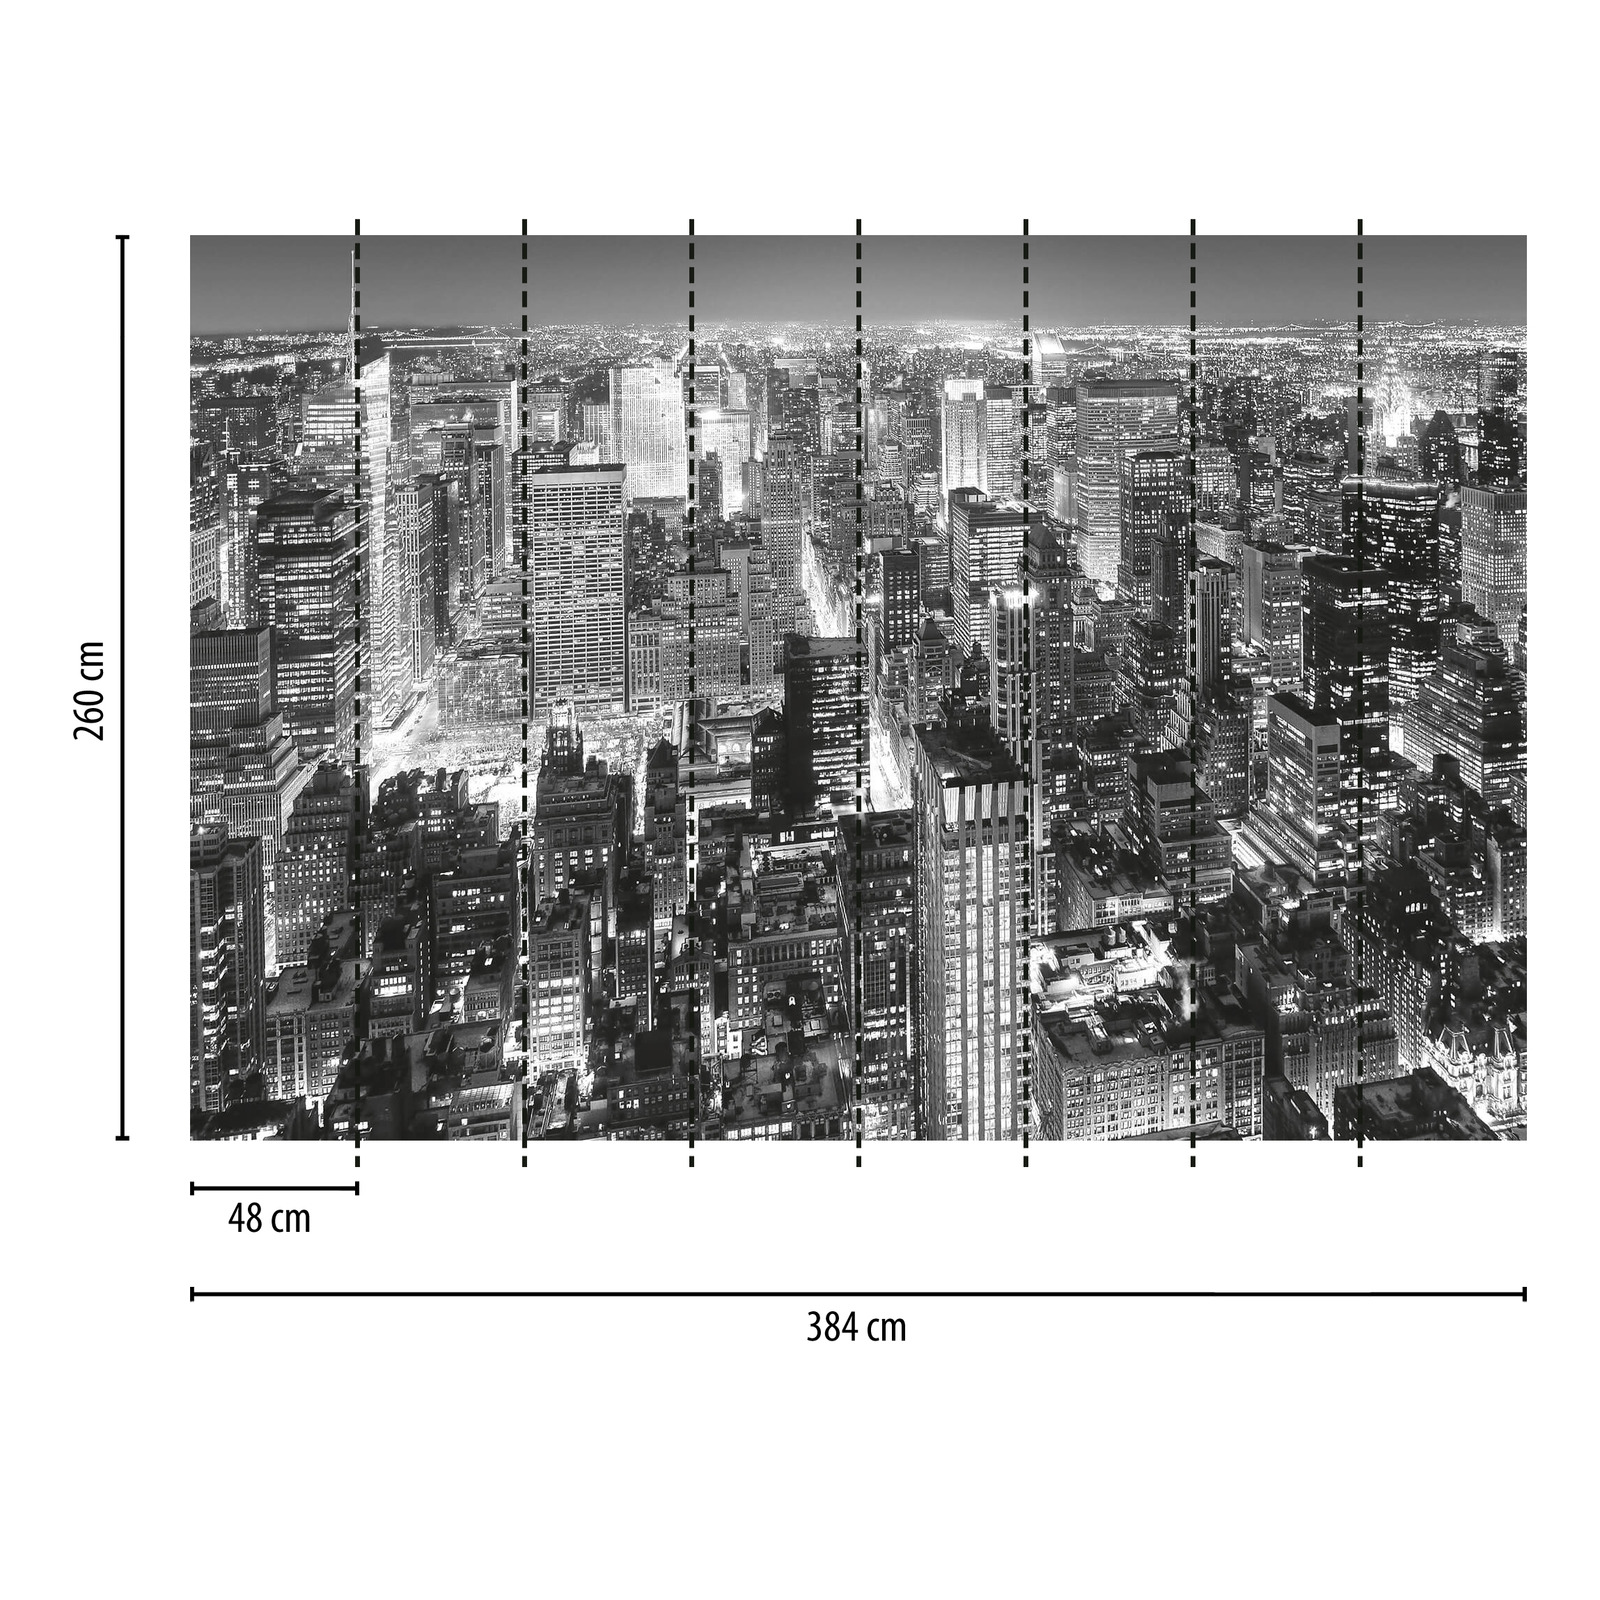             Fondo de pantalla del horizonte de la ciudad de Nueva York en blanco y negro
        